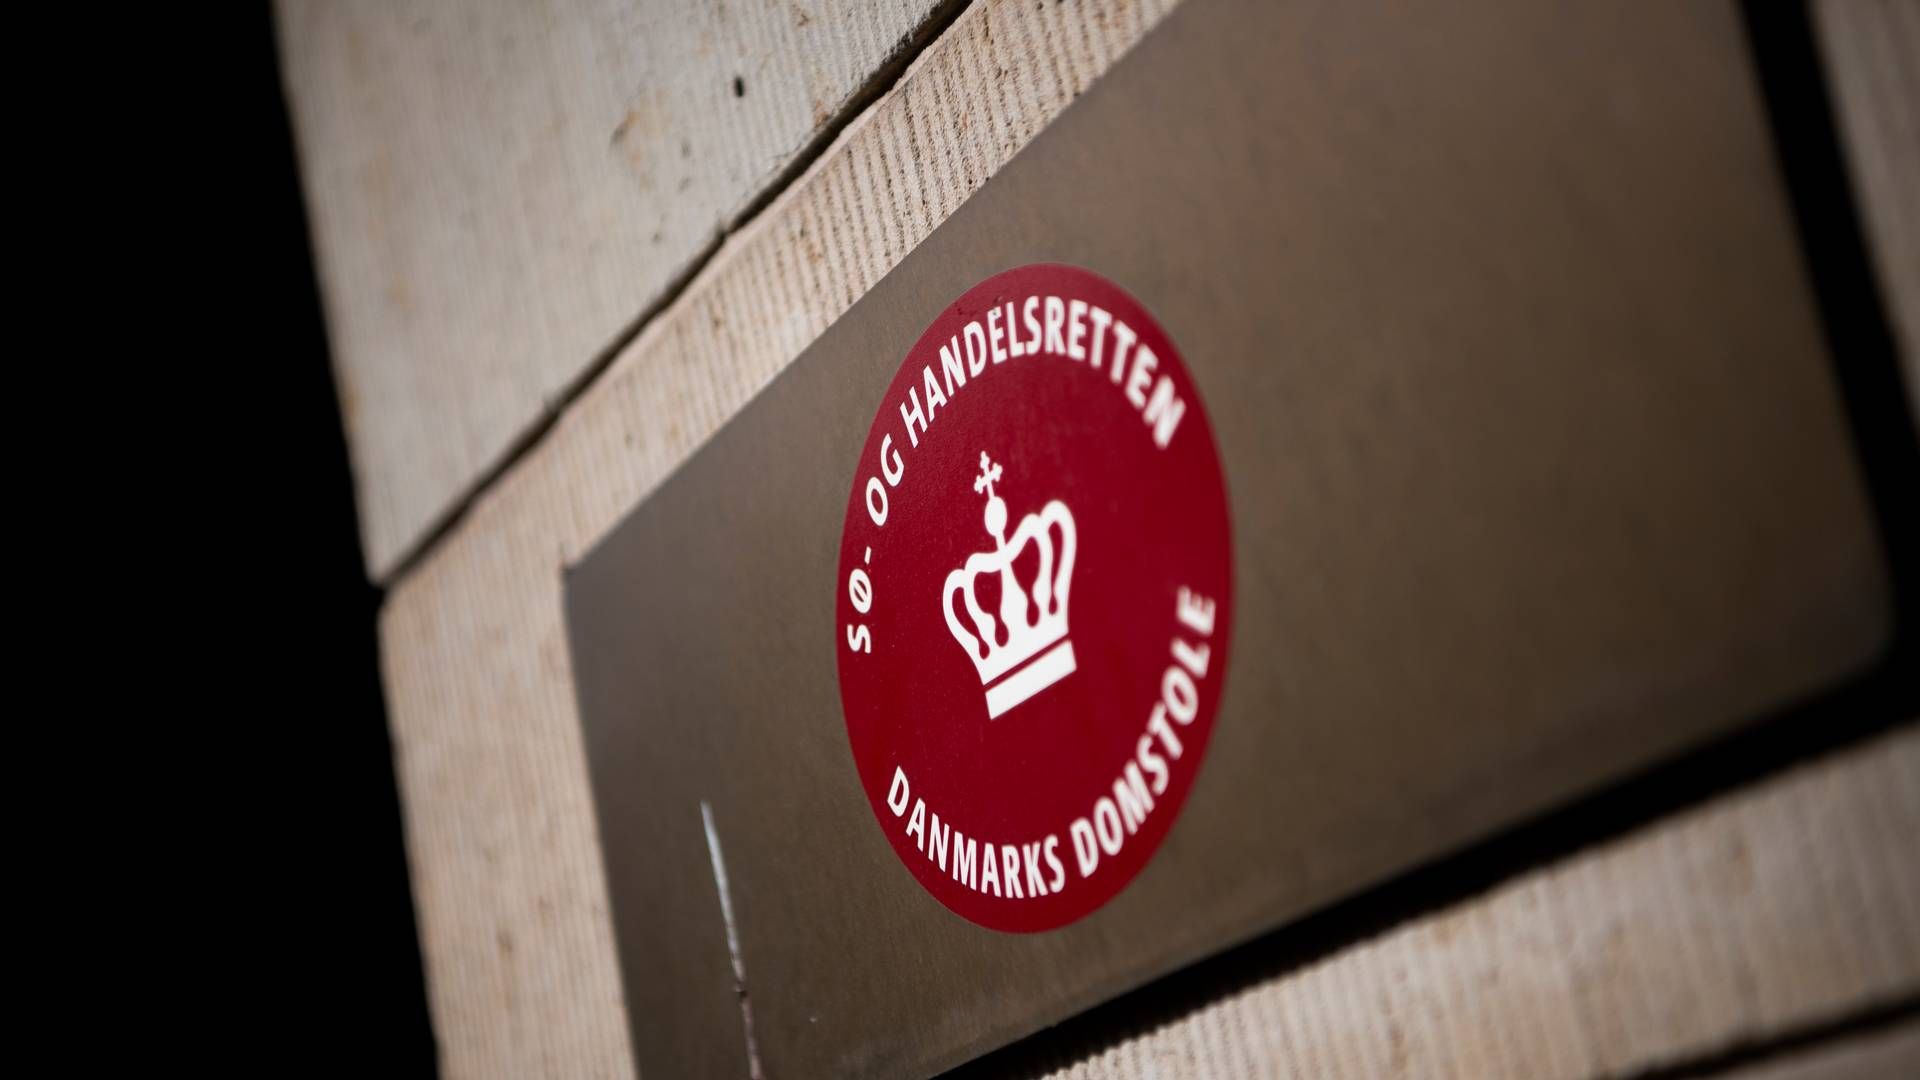 Sø- og handelsretten er Danmarks største skifteret. | Foto: Anthon Unger